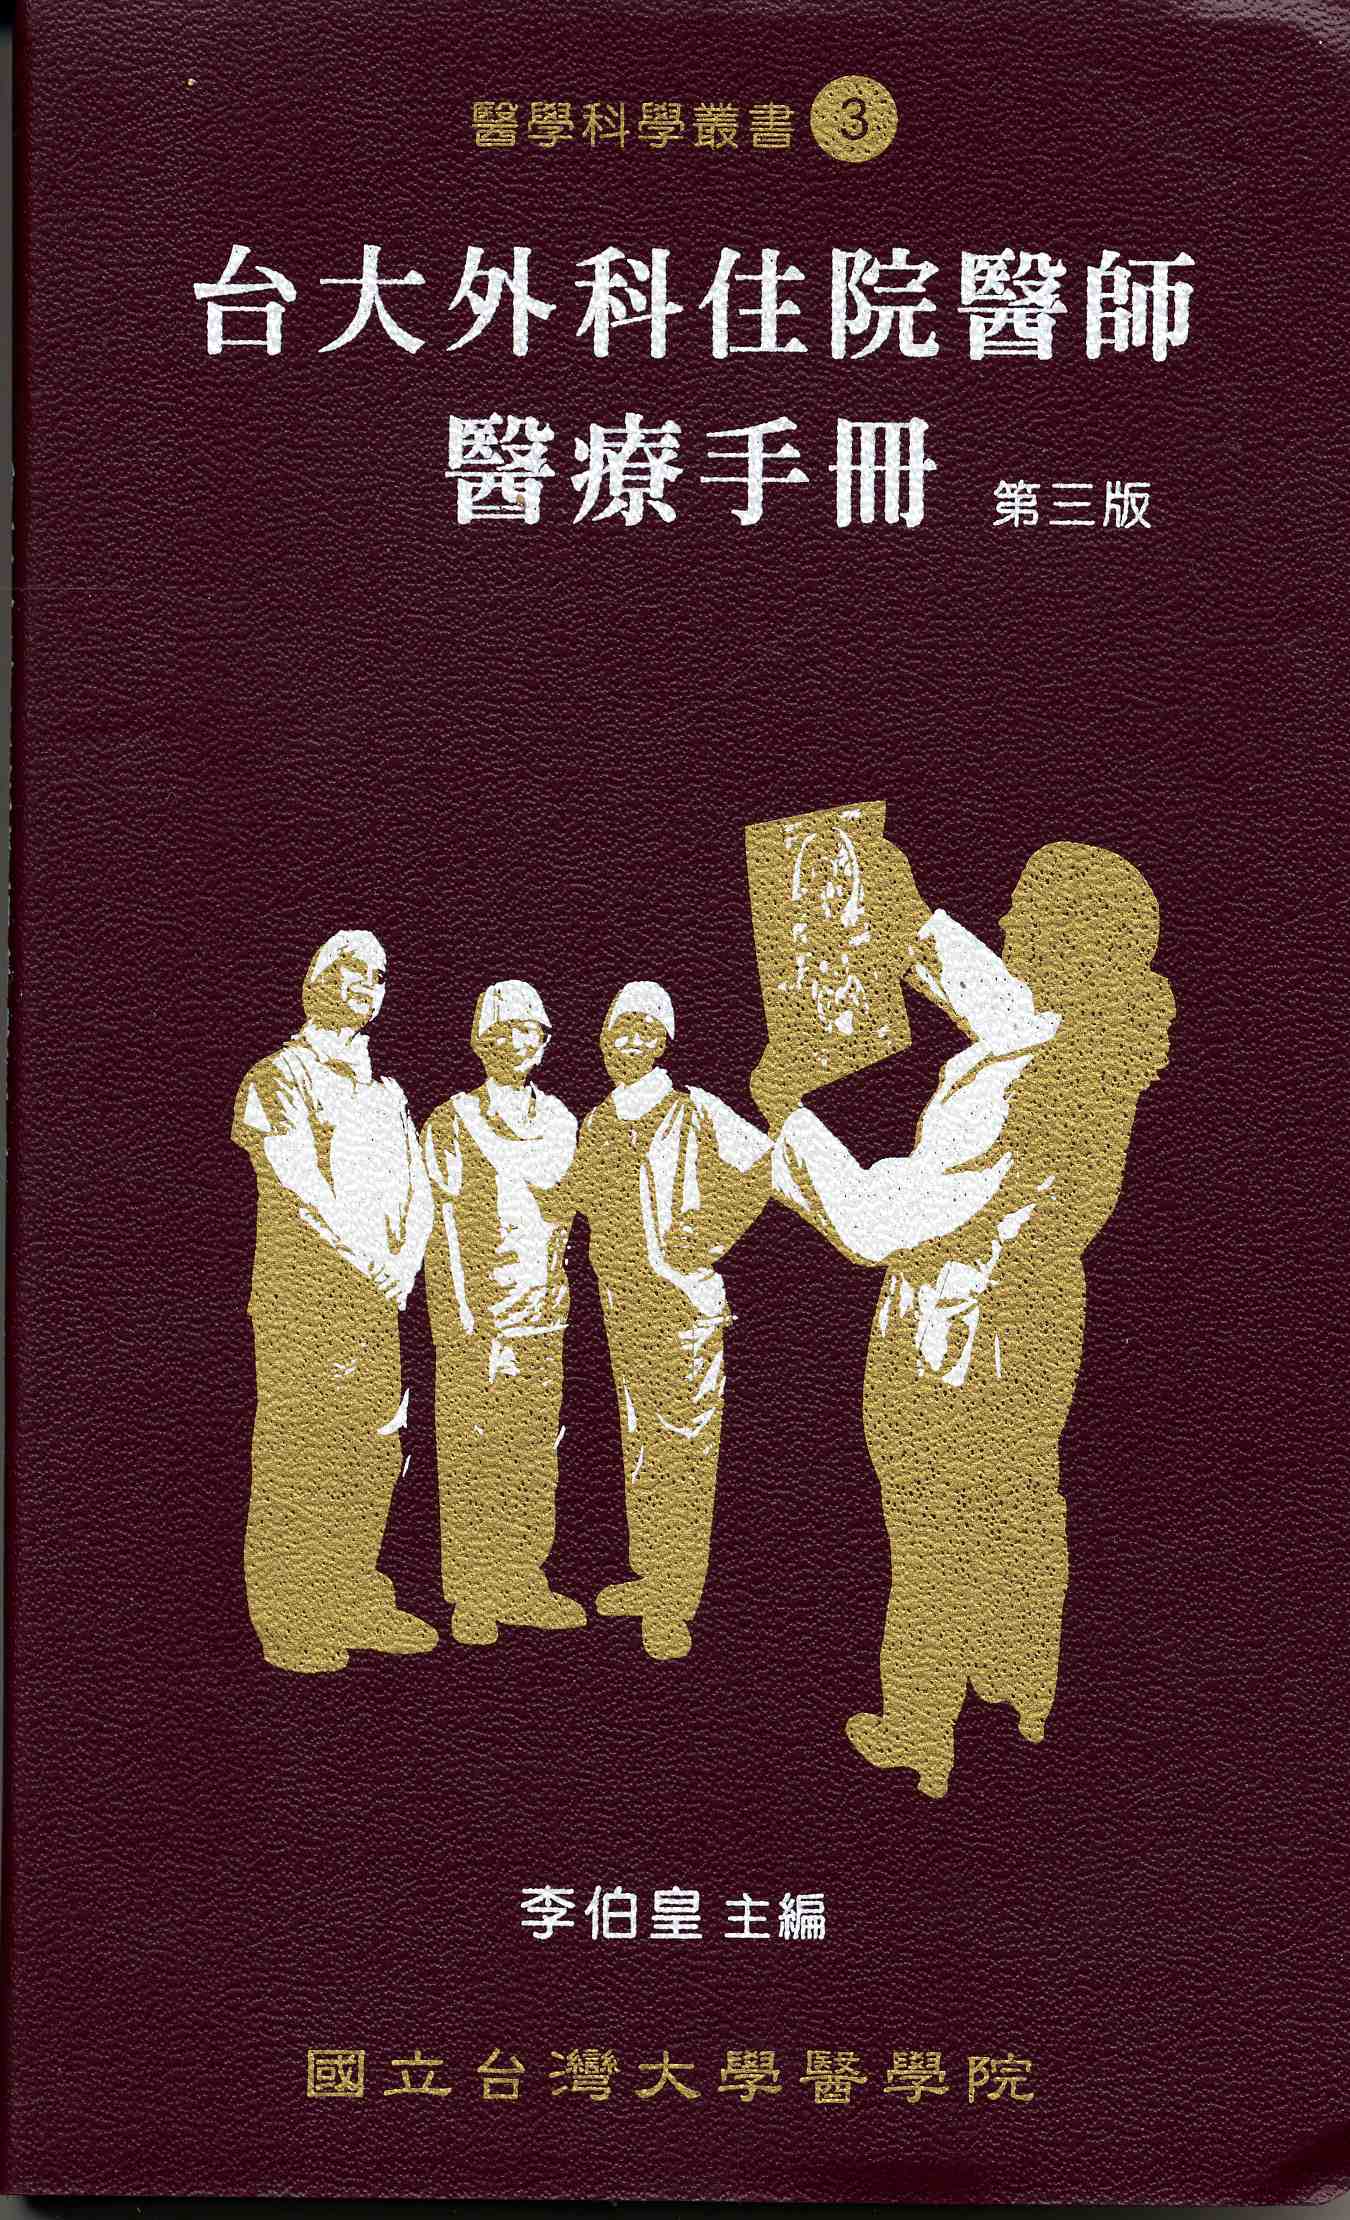 台大外科住院醫師醫療手冊 第三版